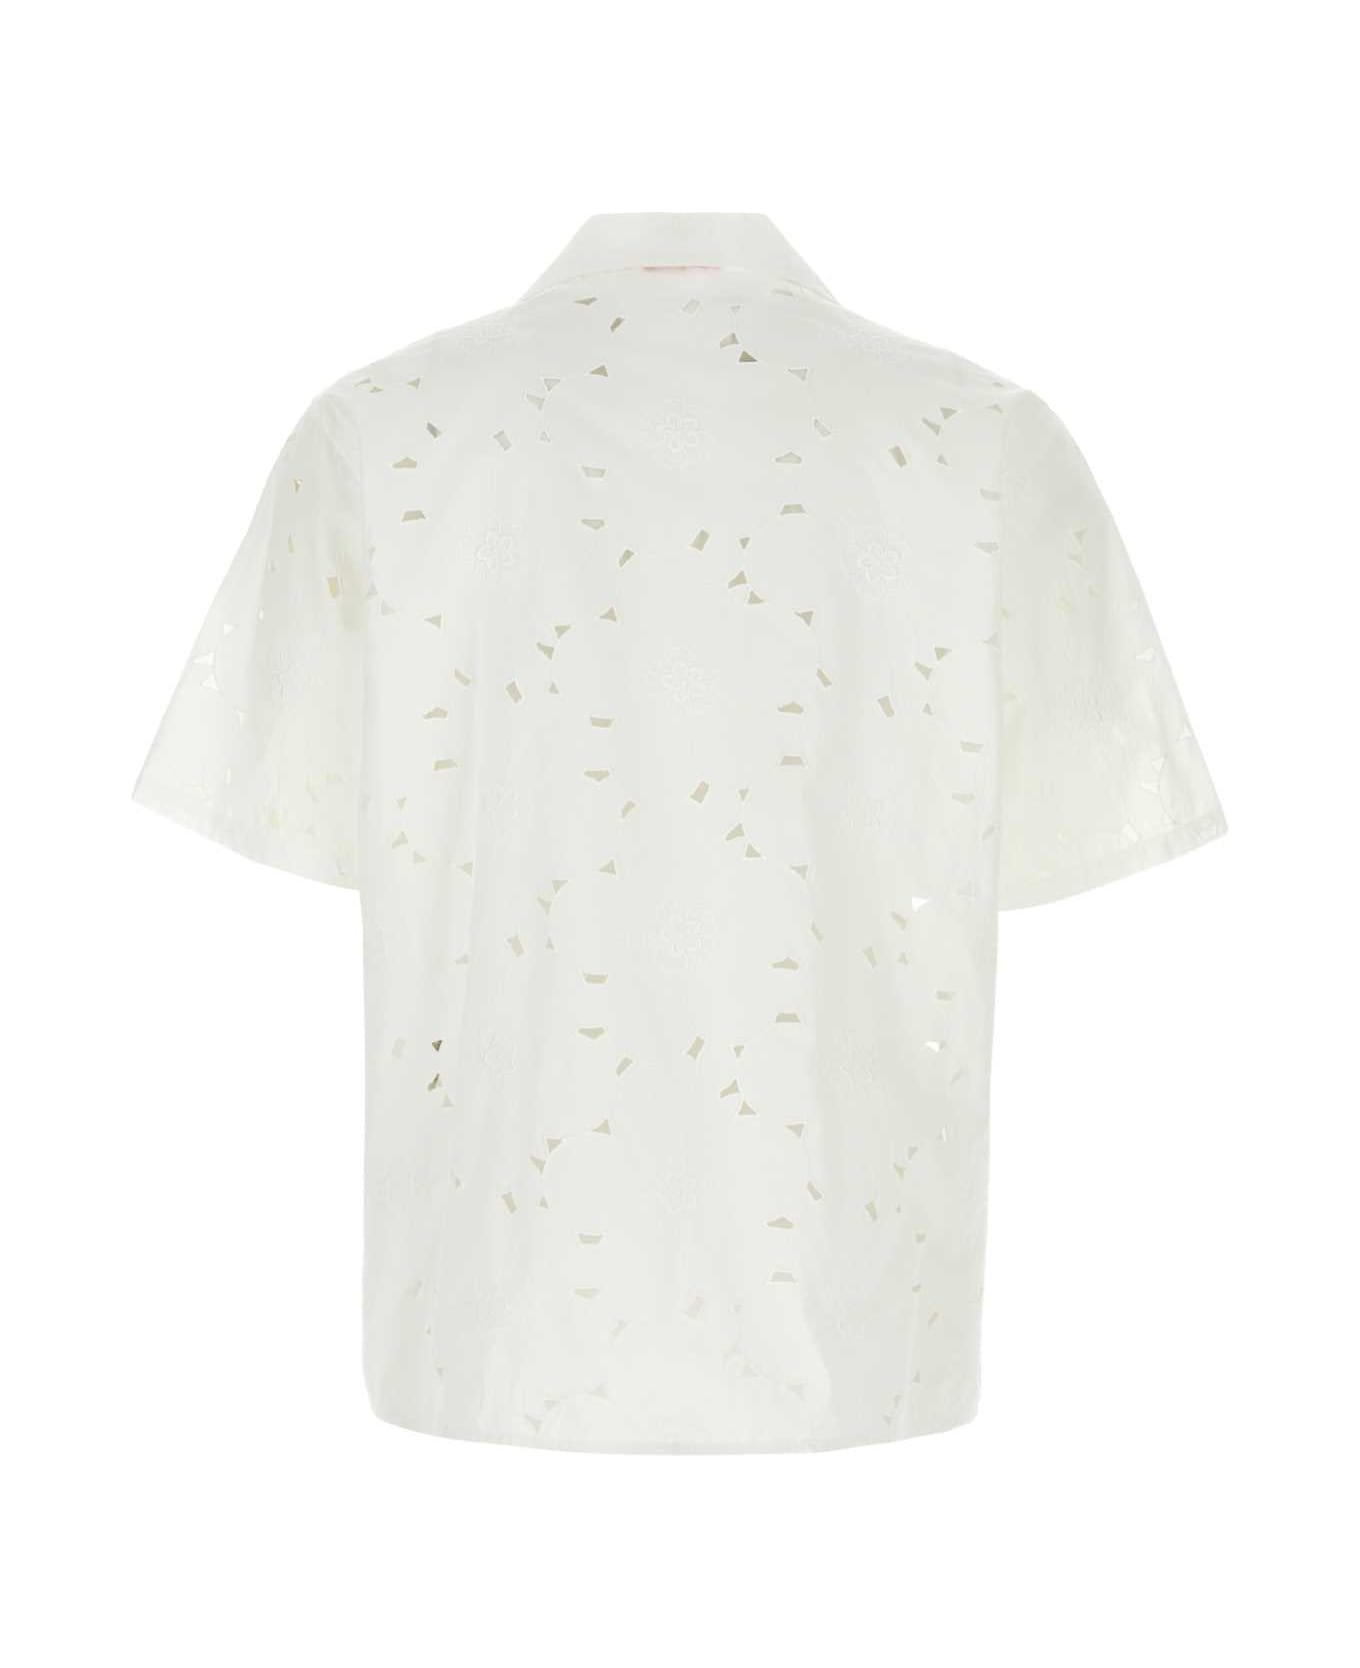 Valentino Garavani White Cotton Blend Shirt - BIANCO シャツ